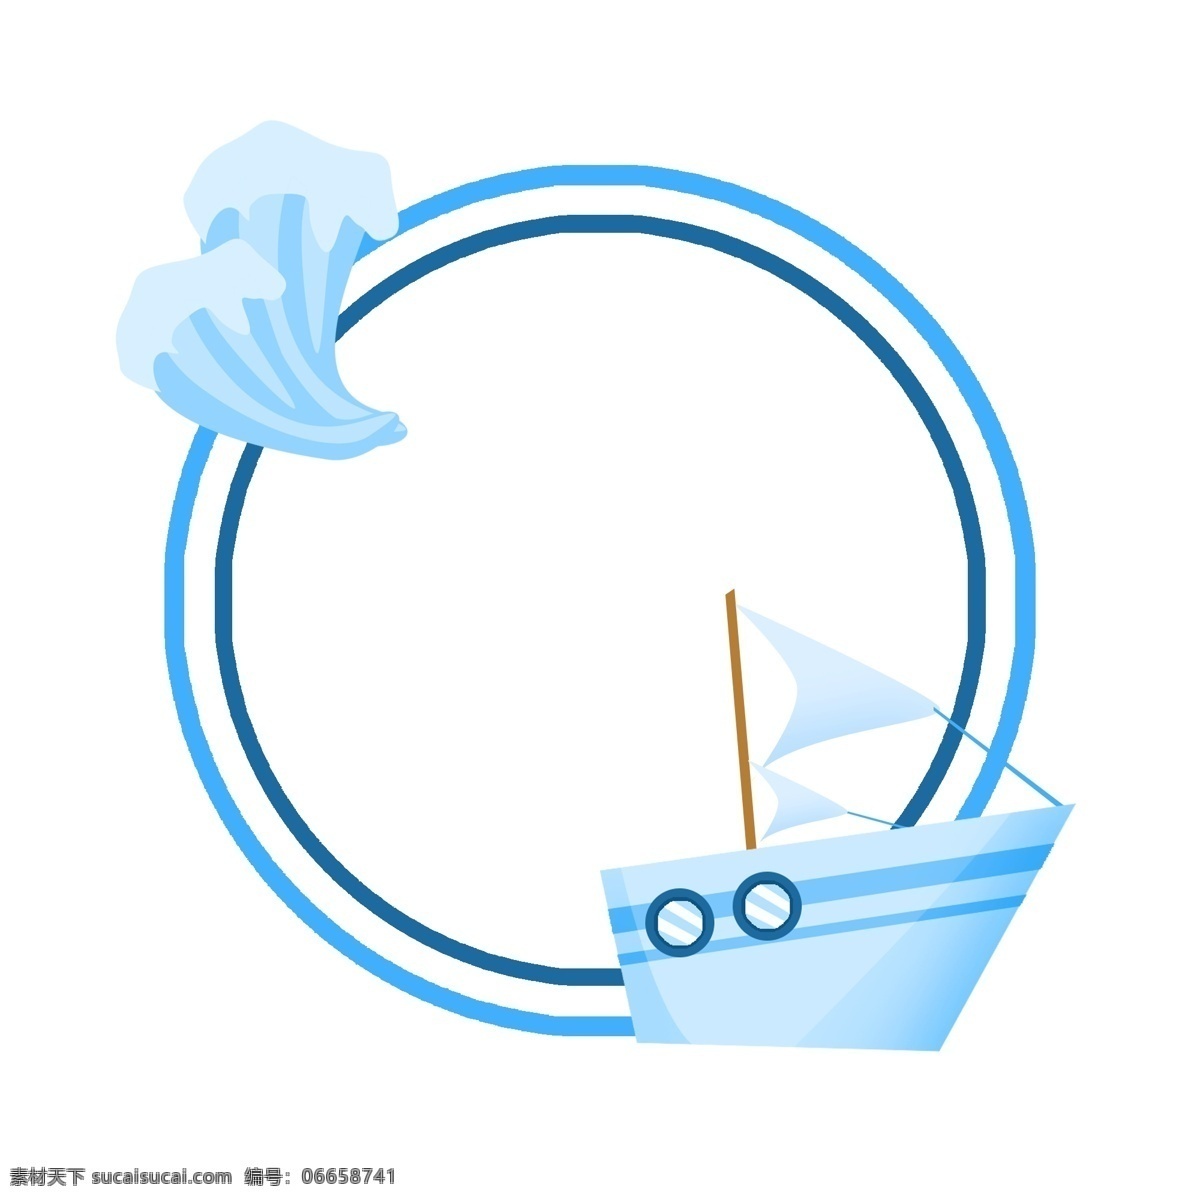 轮船 边框 装饰 插画 轮船边框 蓝色的边框 漂亮的边框 创意边框 精美边框 卡通边框 边框装饰